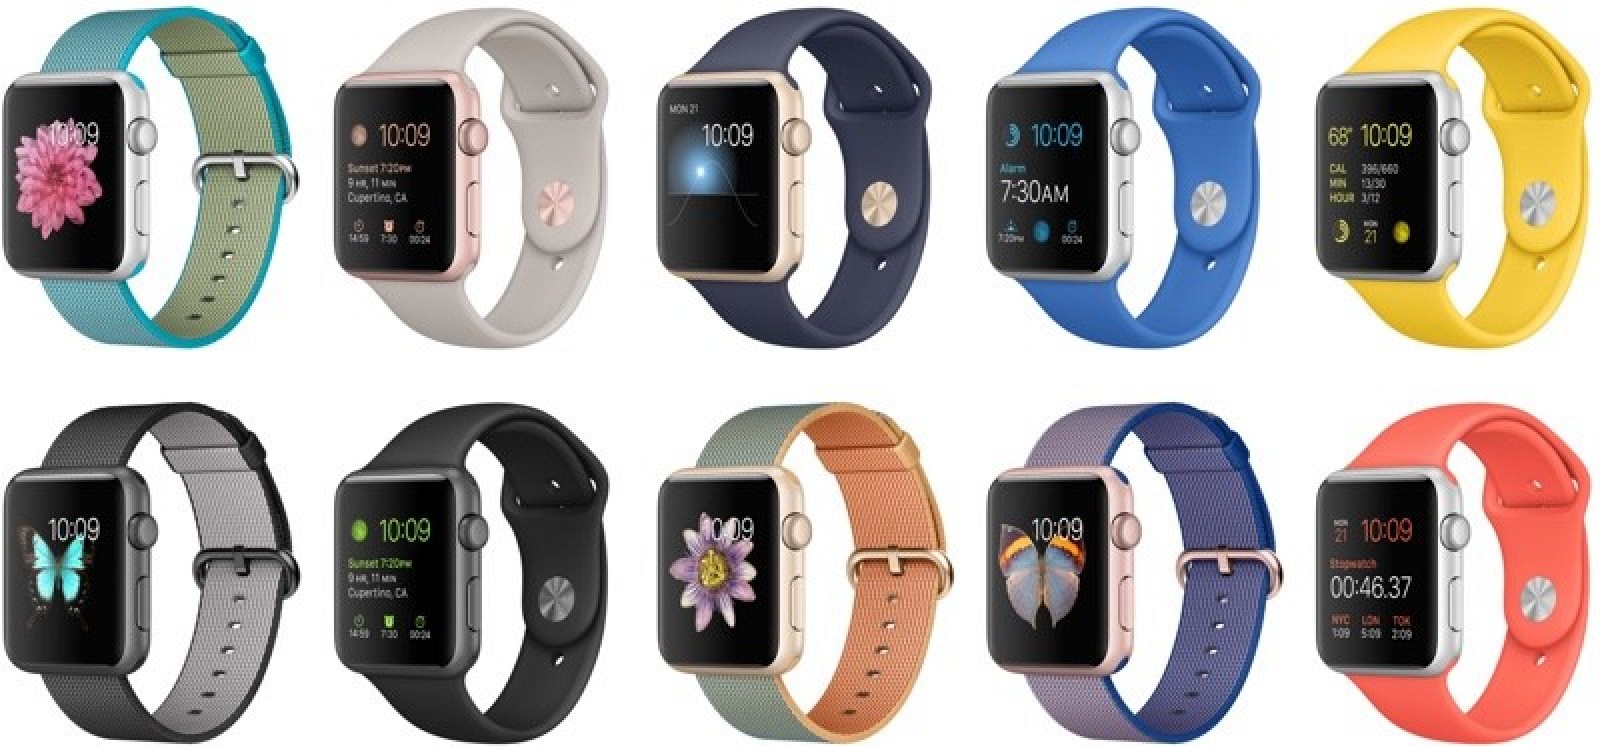 Bán đồng hồ thông minh Apple Watch 2015, Series 1 và Series 2